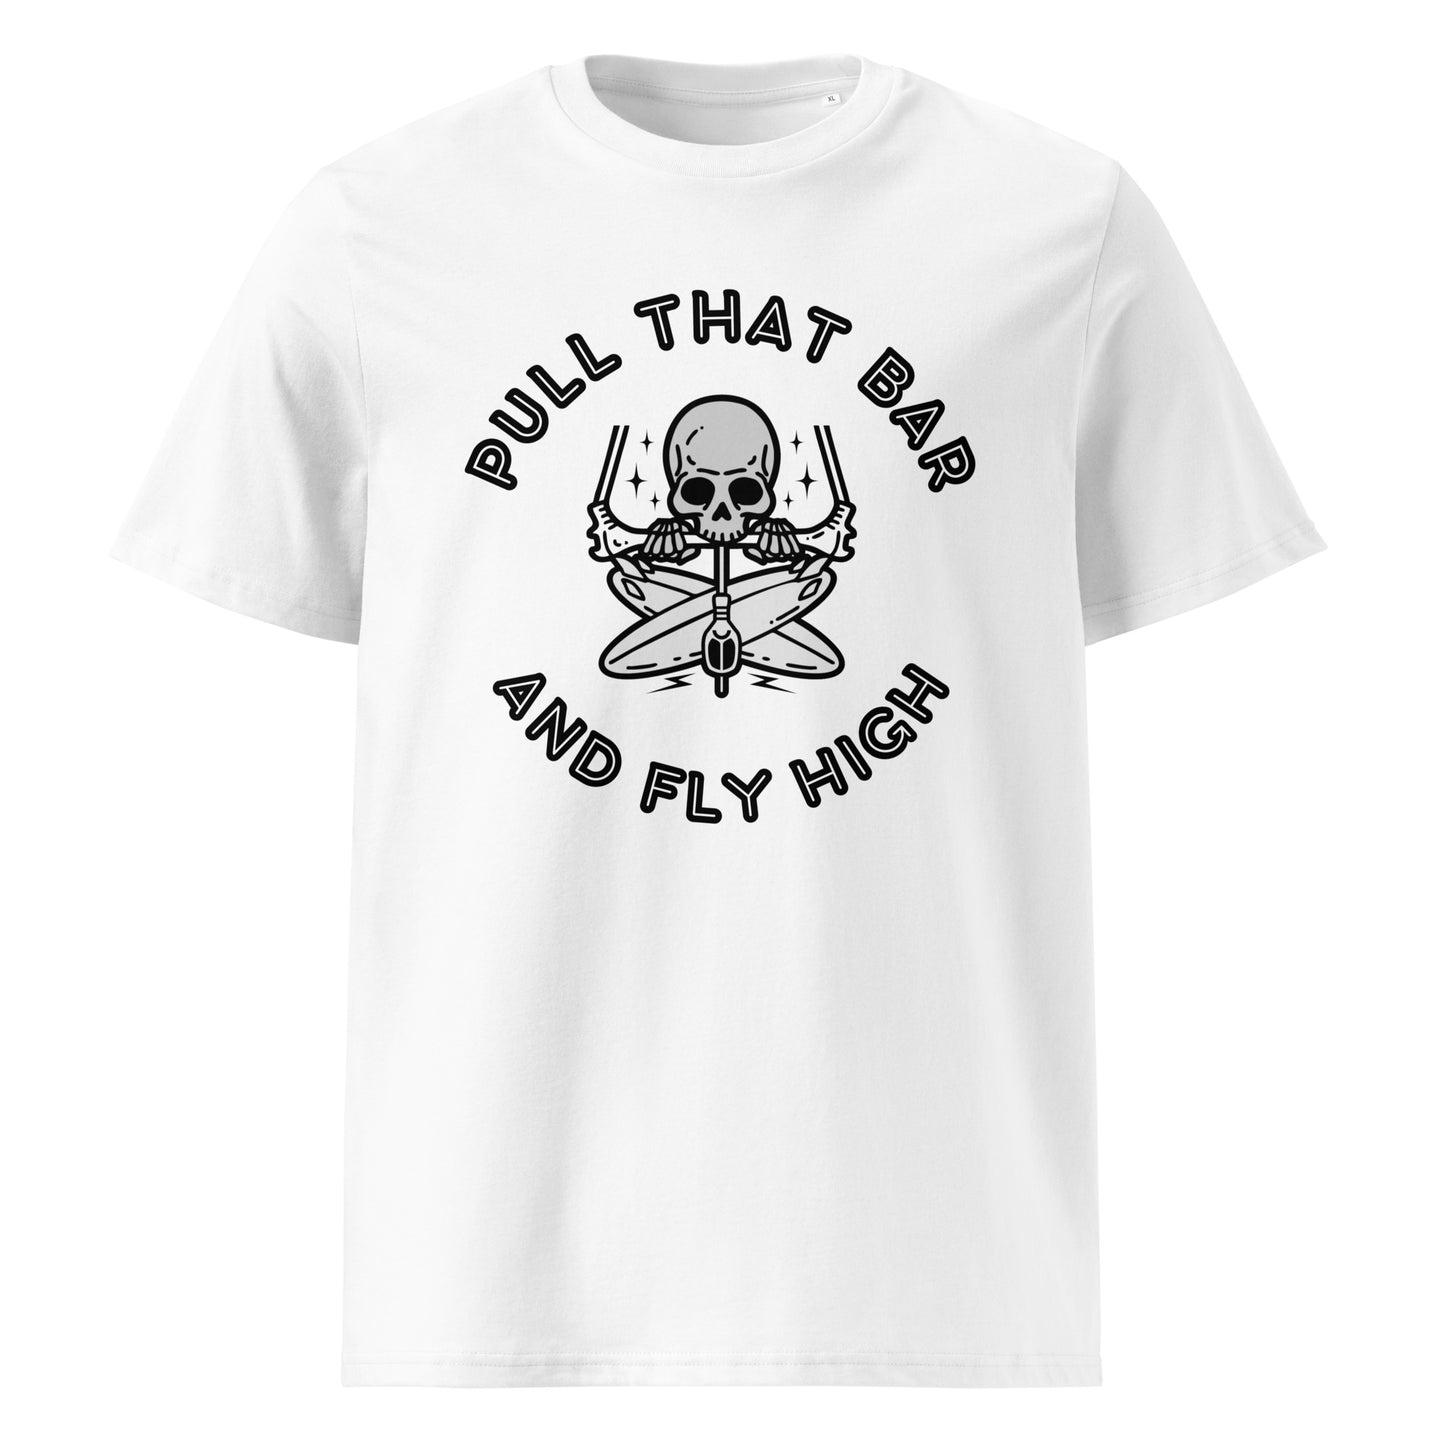 T-Shirt Kitesurf "Pull That Bar"